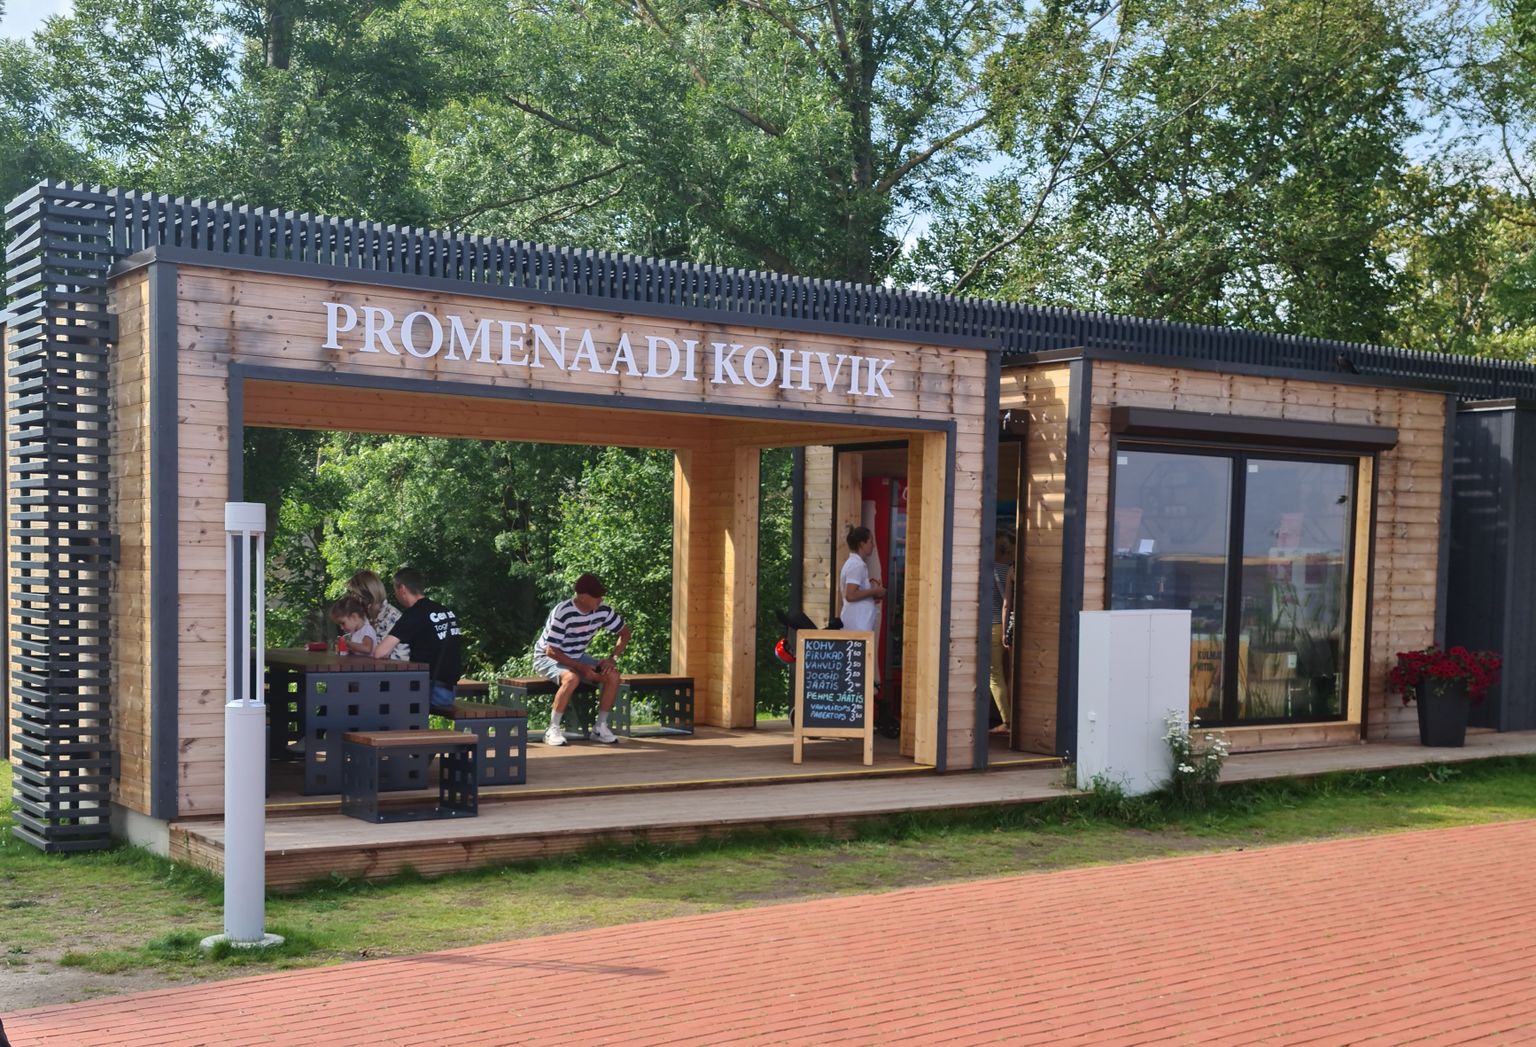 Eelmisel suvel sai Sillamäe promenaadil kohvi ja pirukat osta vaid ühest müügikohast.